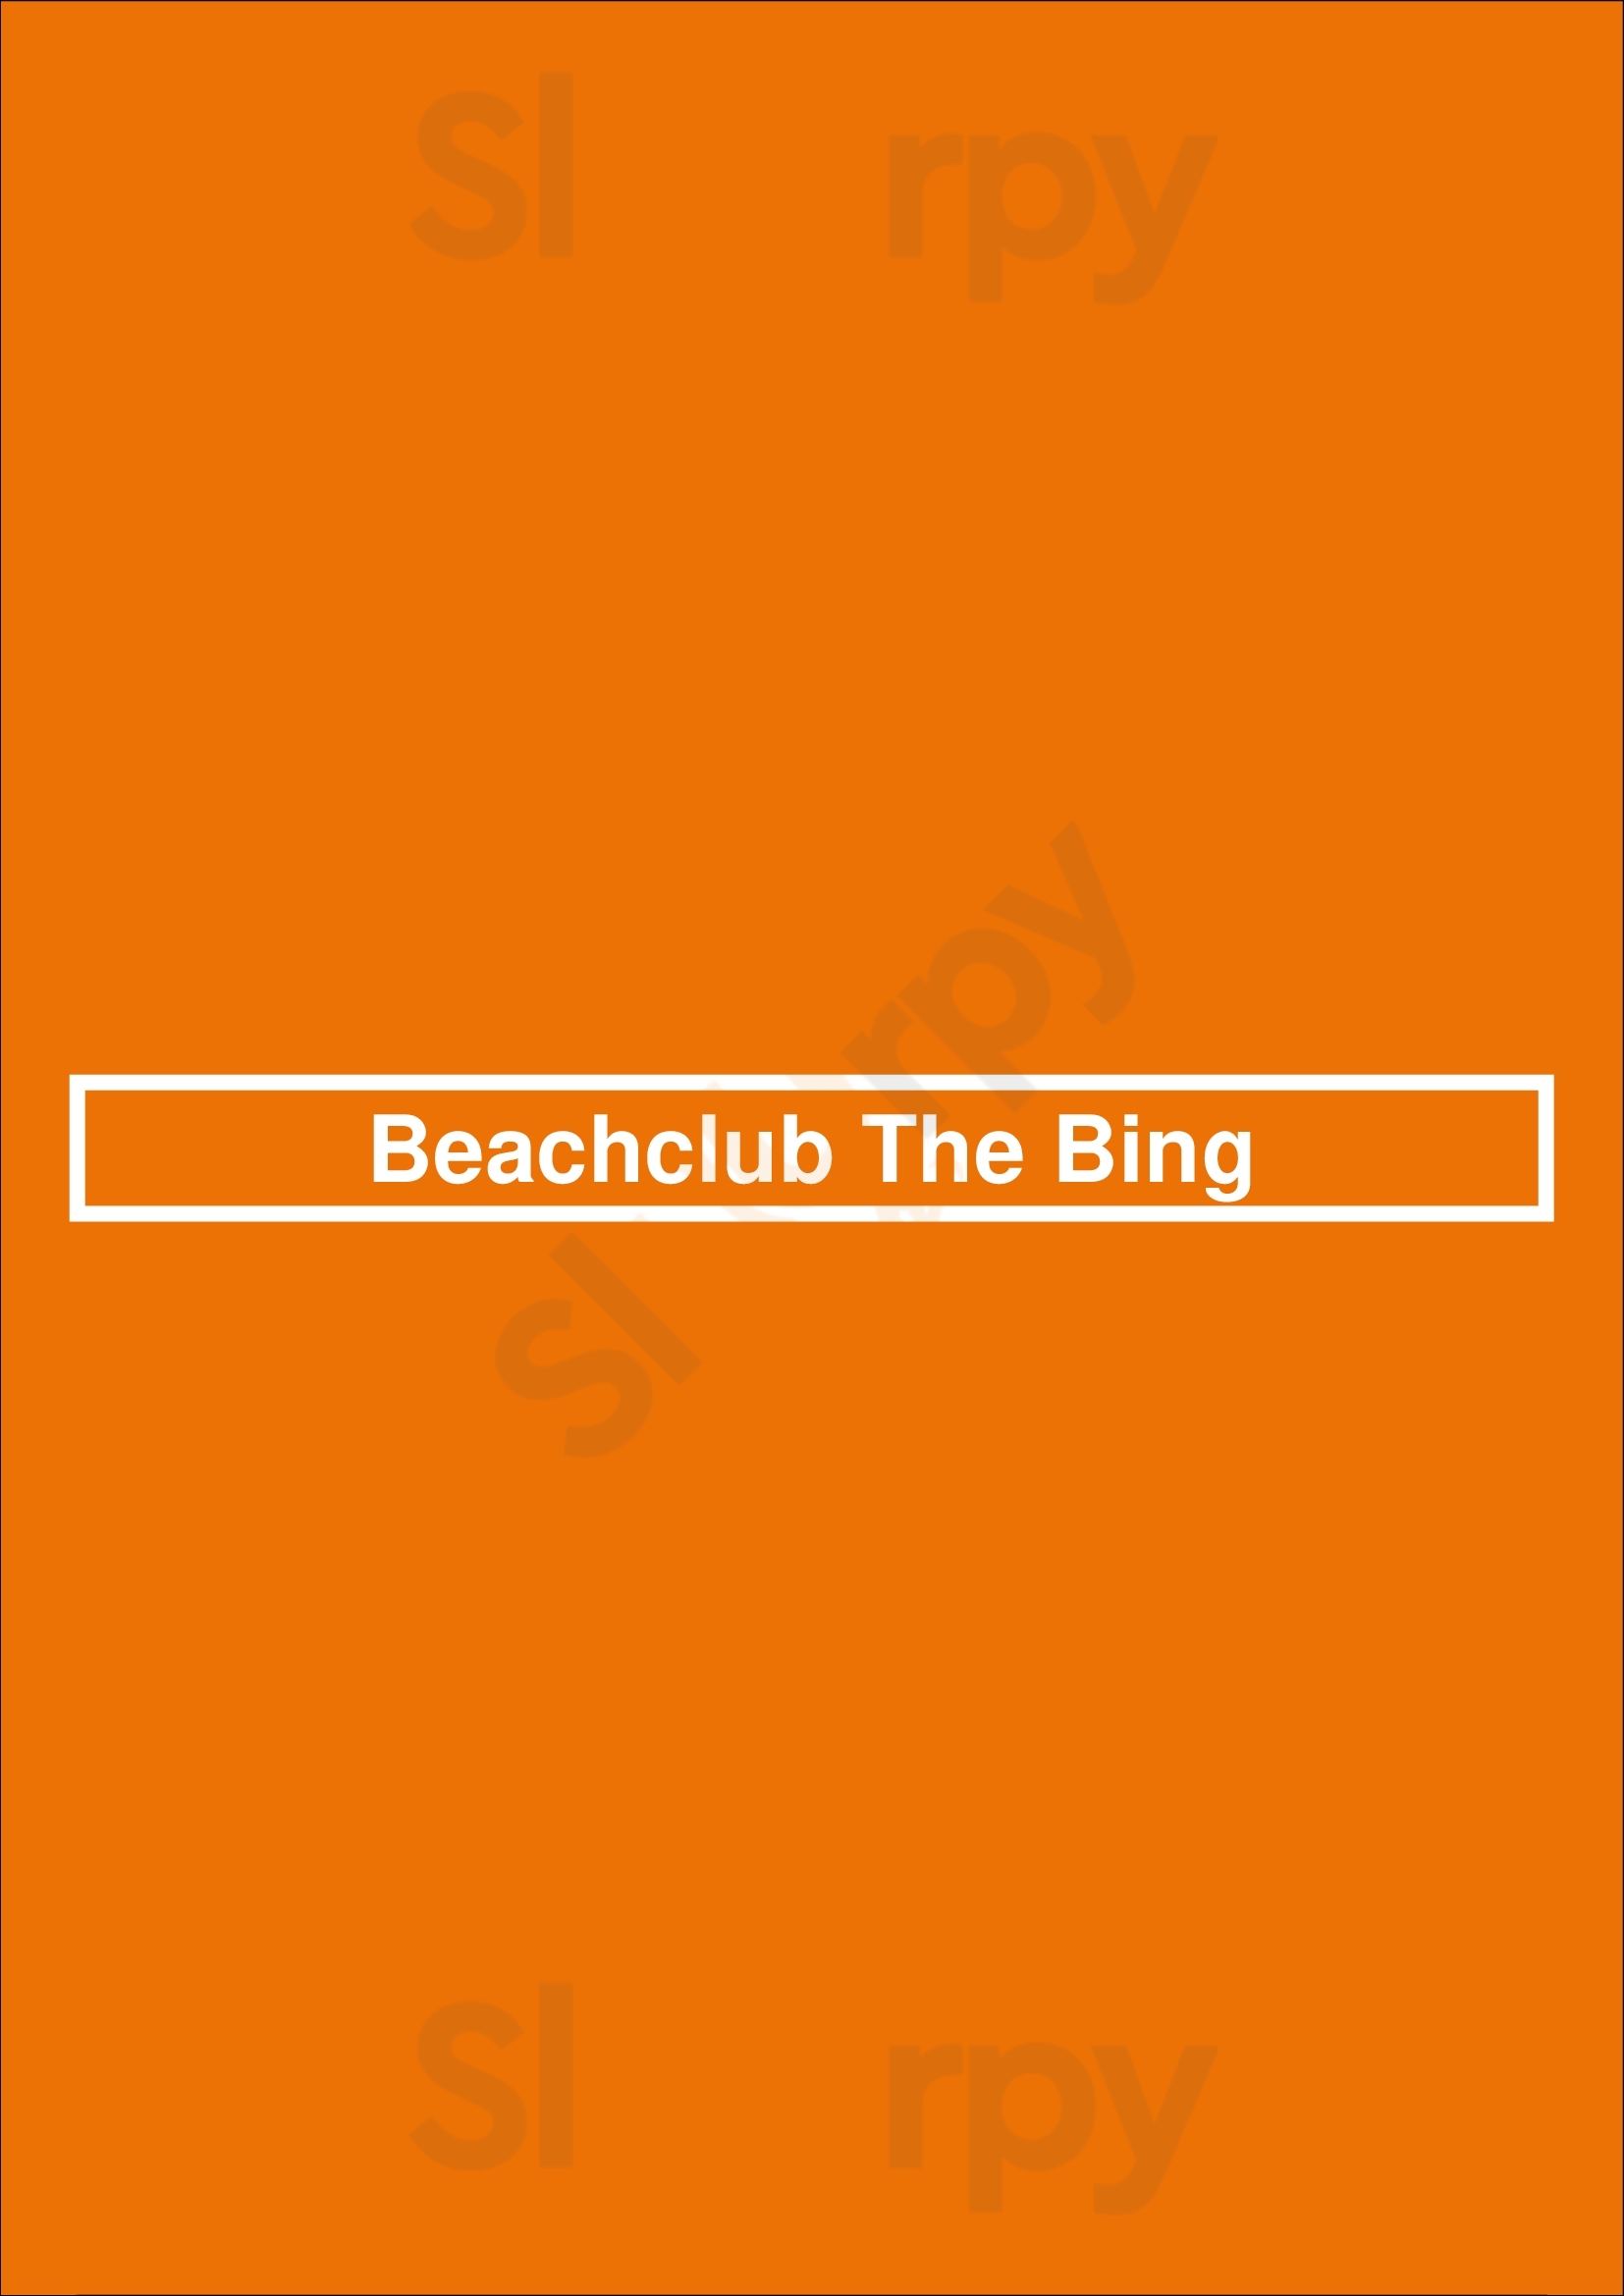 Beachclub The Bing Hoek van Holland Menu - 1